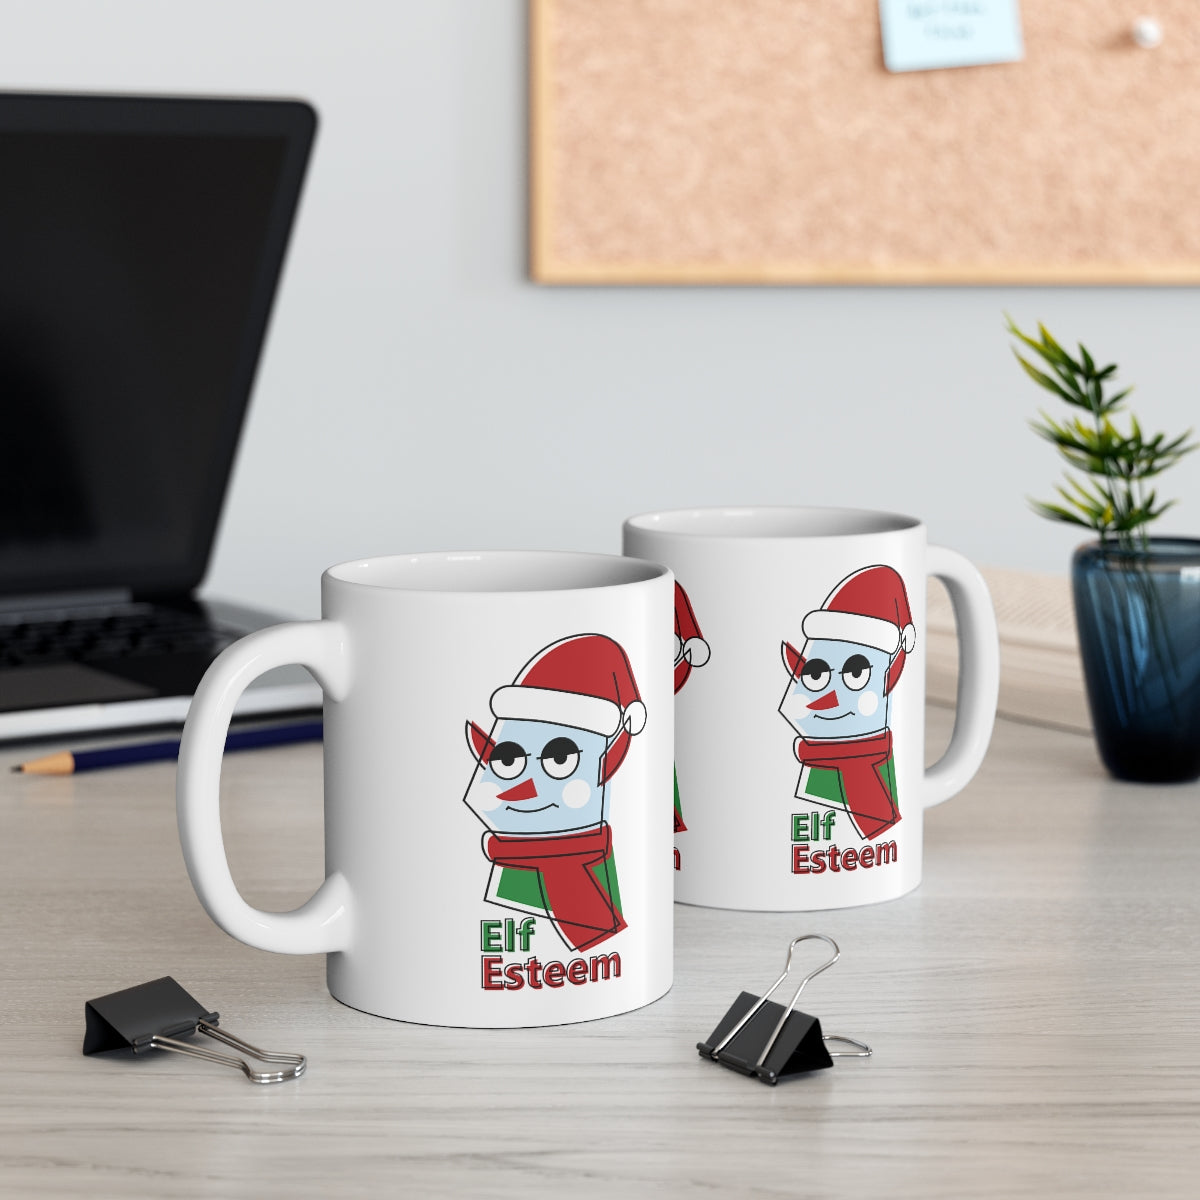 Coffee Mug Elf Esteem, Ceramic Mug 11oz, Gift for Daughters, Friends